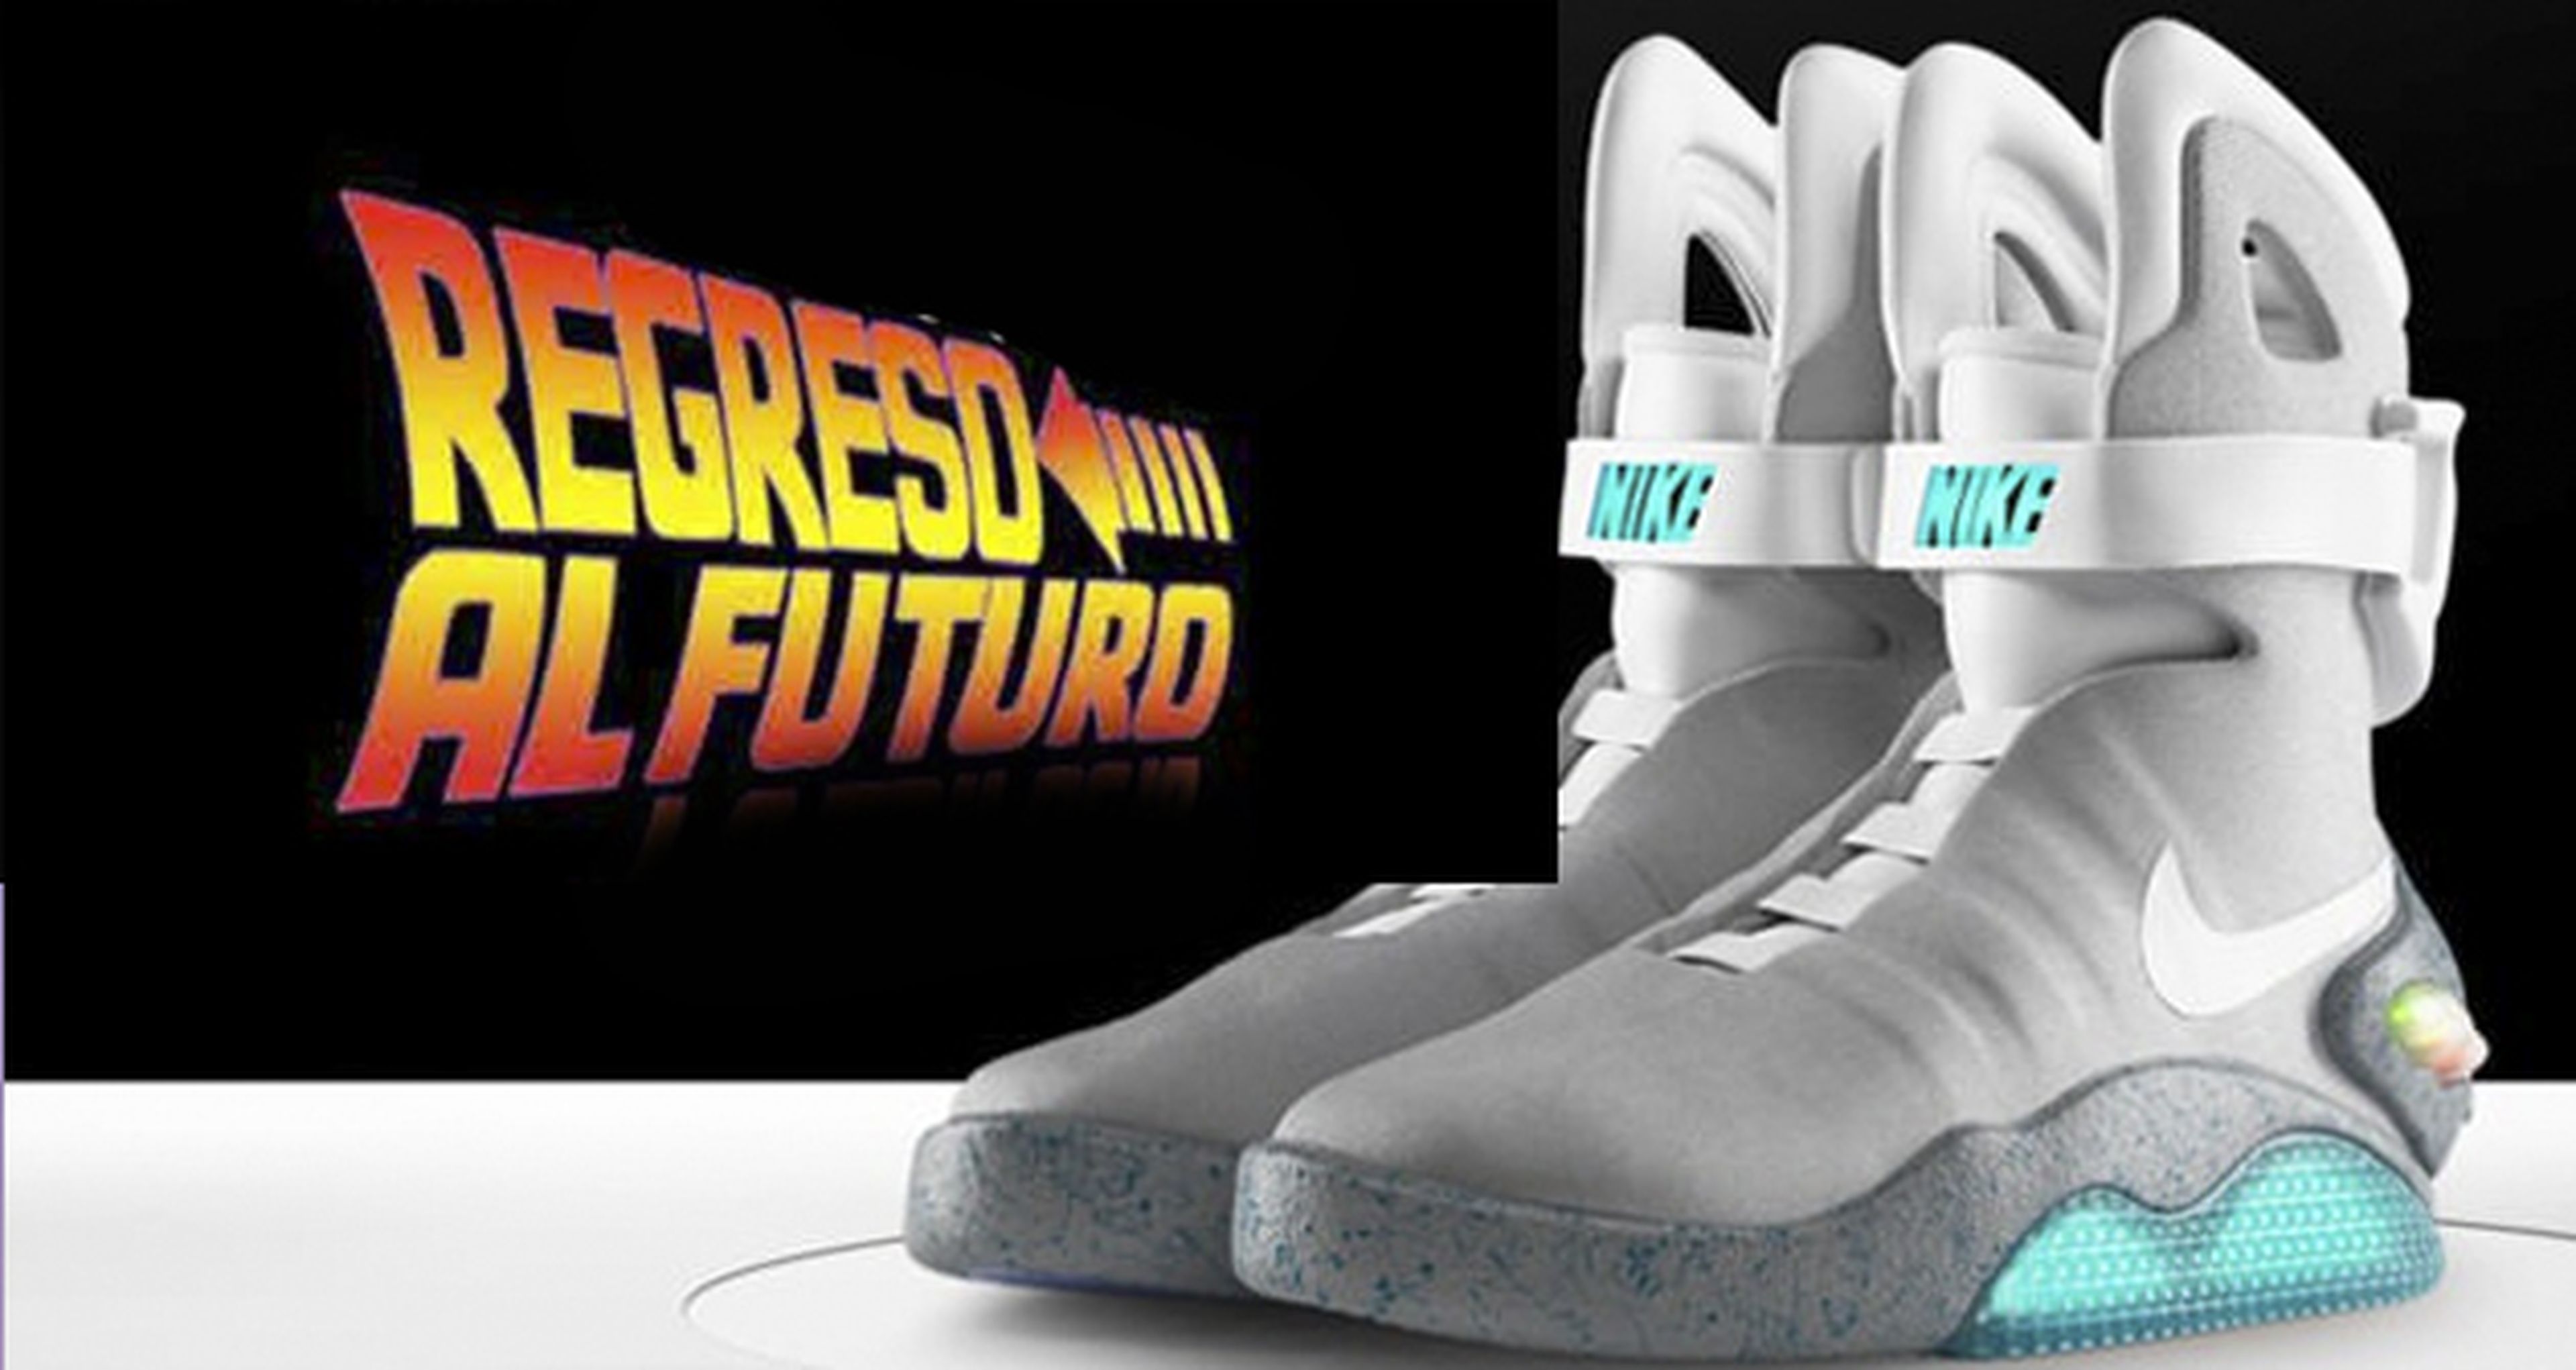 filete Tormento Respectivamente Regreso al futuro: Michael J. Fox se prueba las Nike Air MAG que salen a la  venta en 2016 | Hobby Consolas